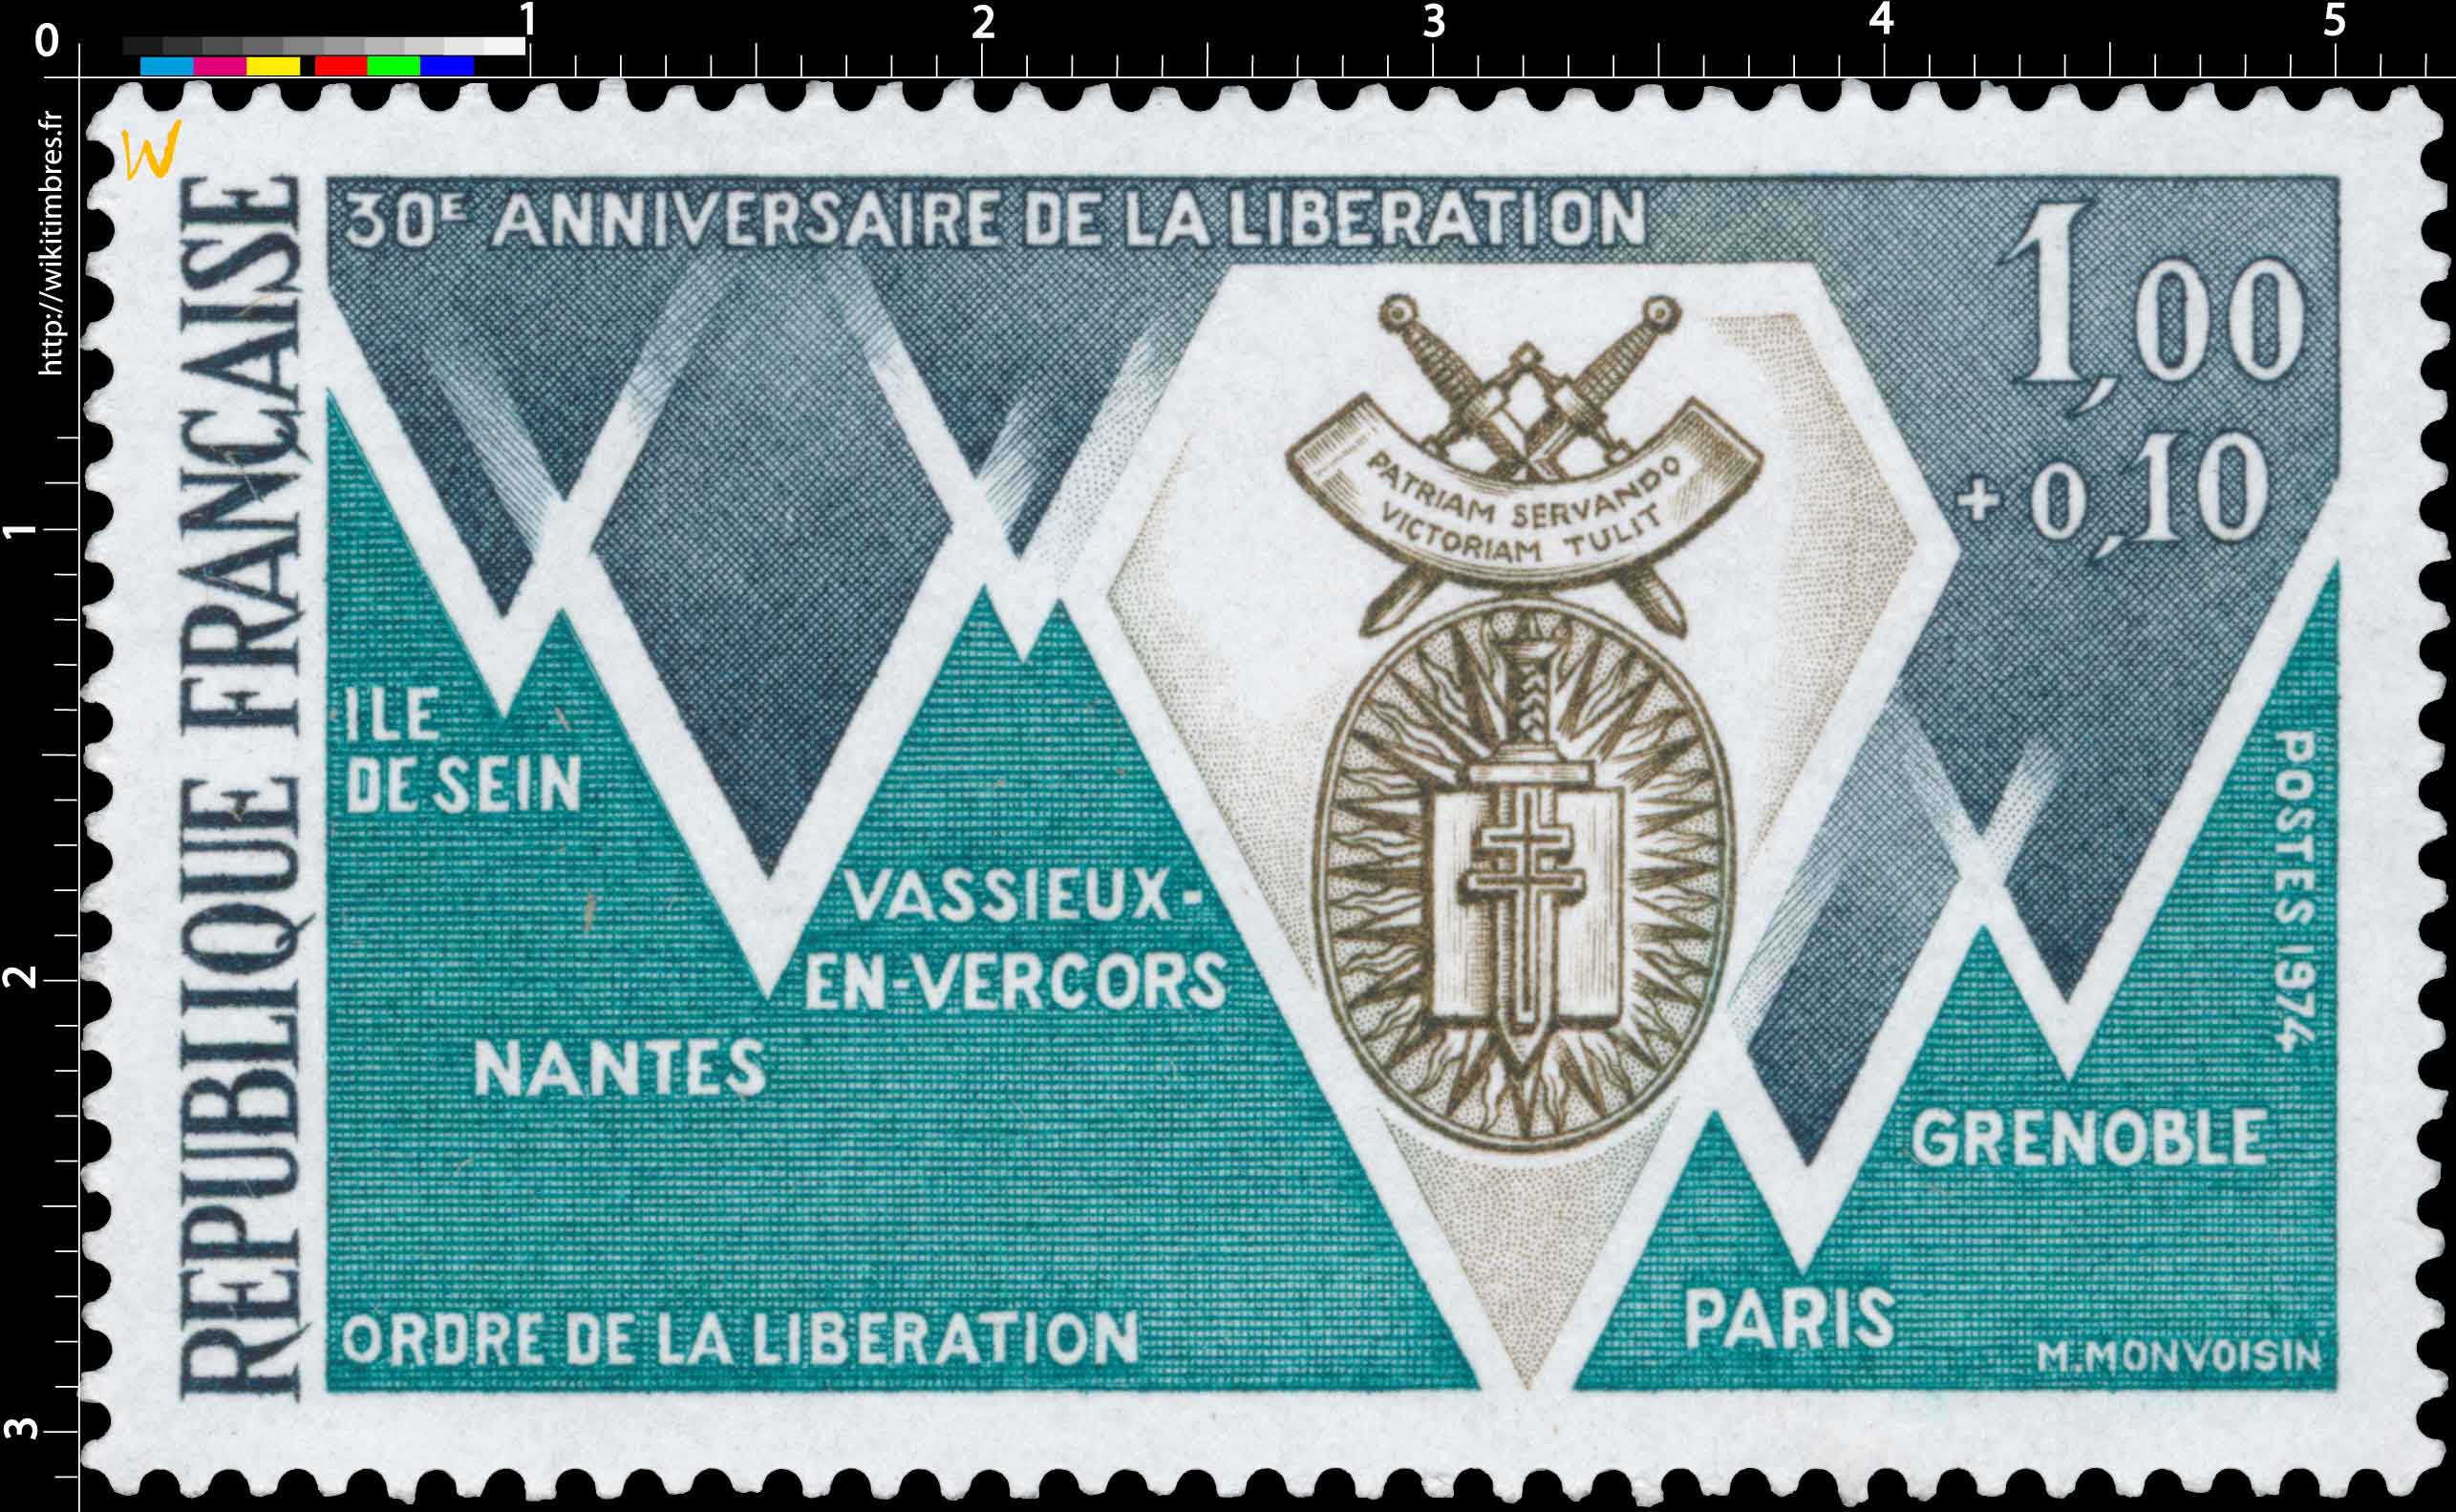 1974 30e ANNIVERSAIRE DE LA LIBÉRATION ORDRE DE LA LIBÉRATION ILE DE SEIN NANTES VASSIEUX-EN-VERCORS PARIS GRENOBLE